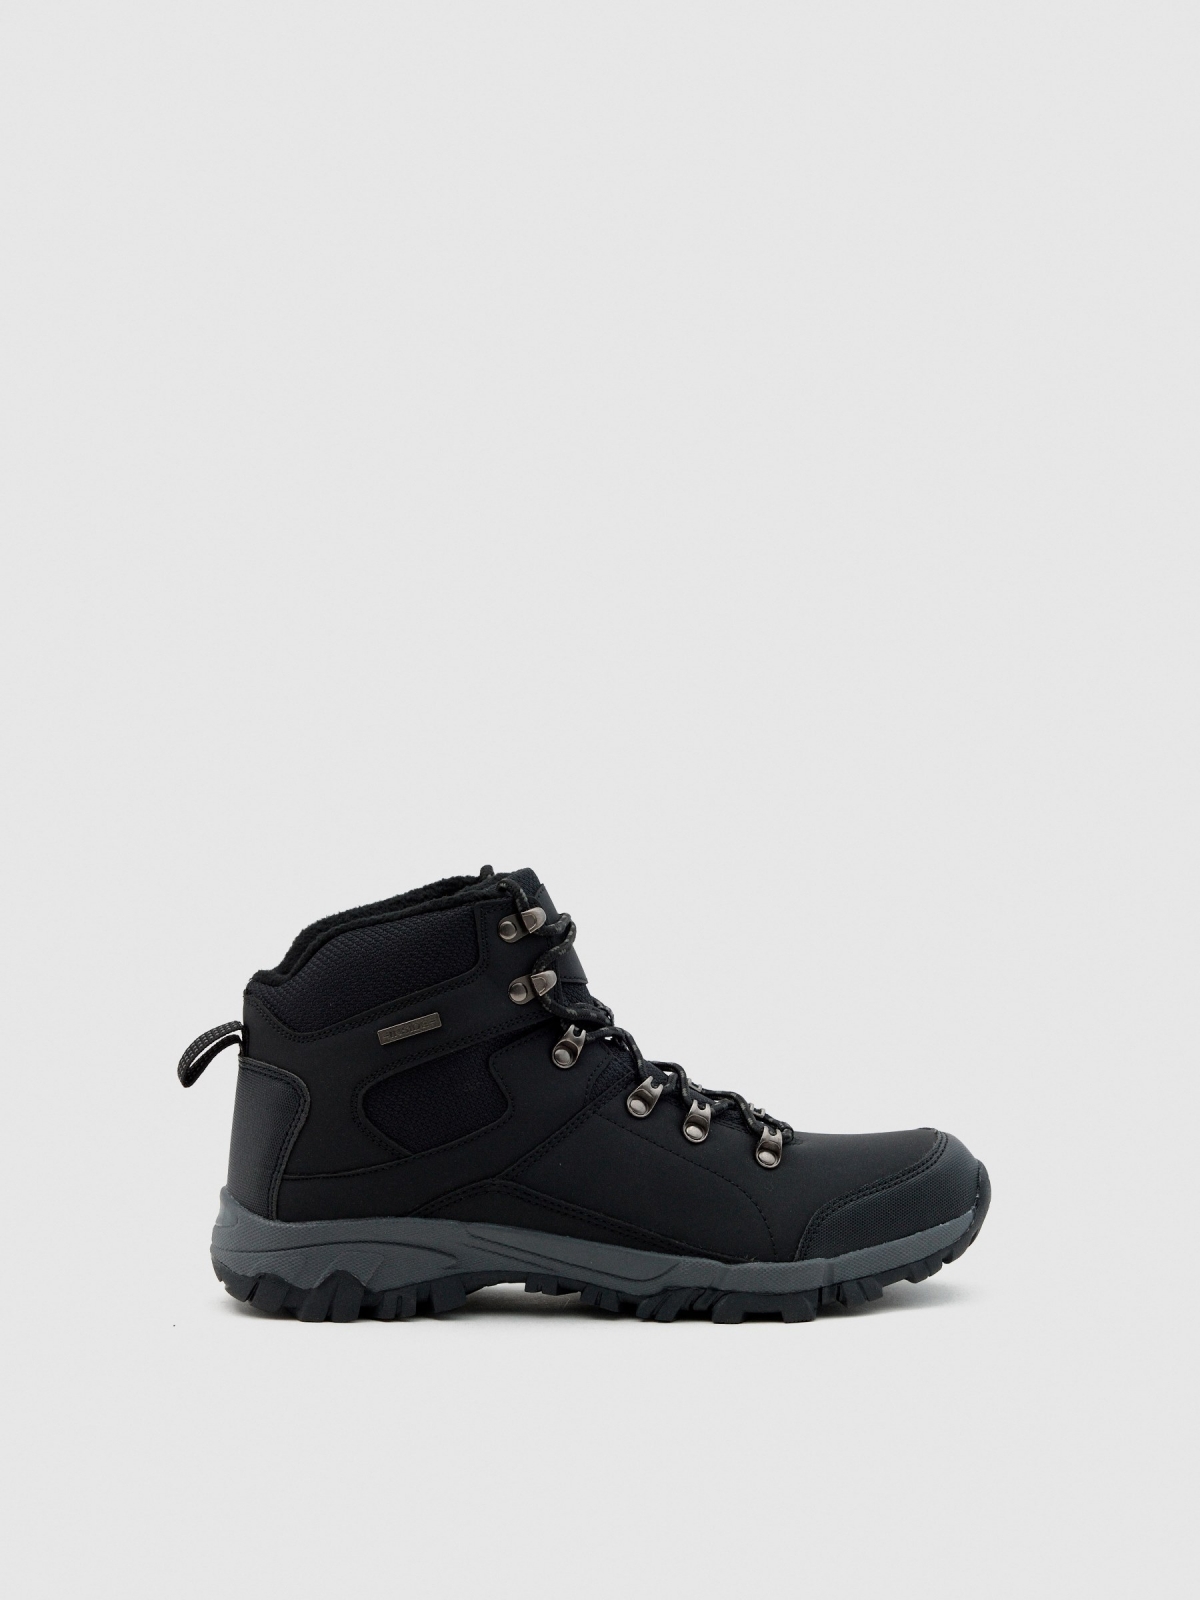 Men's mountaineering boot black